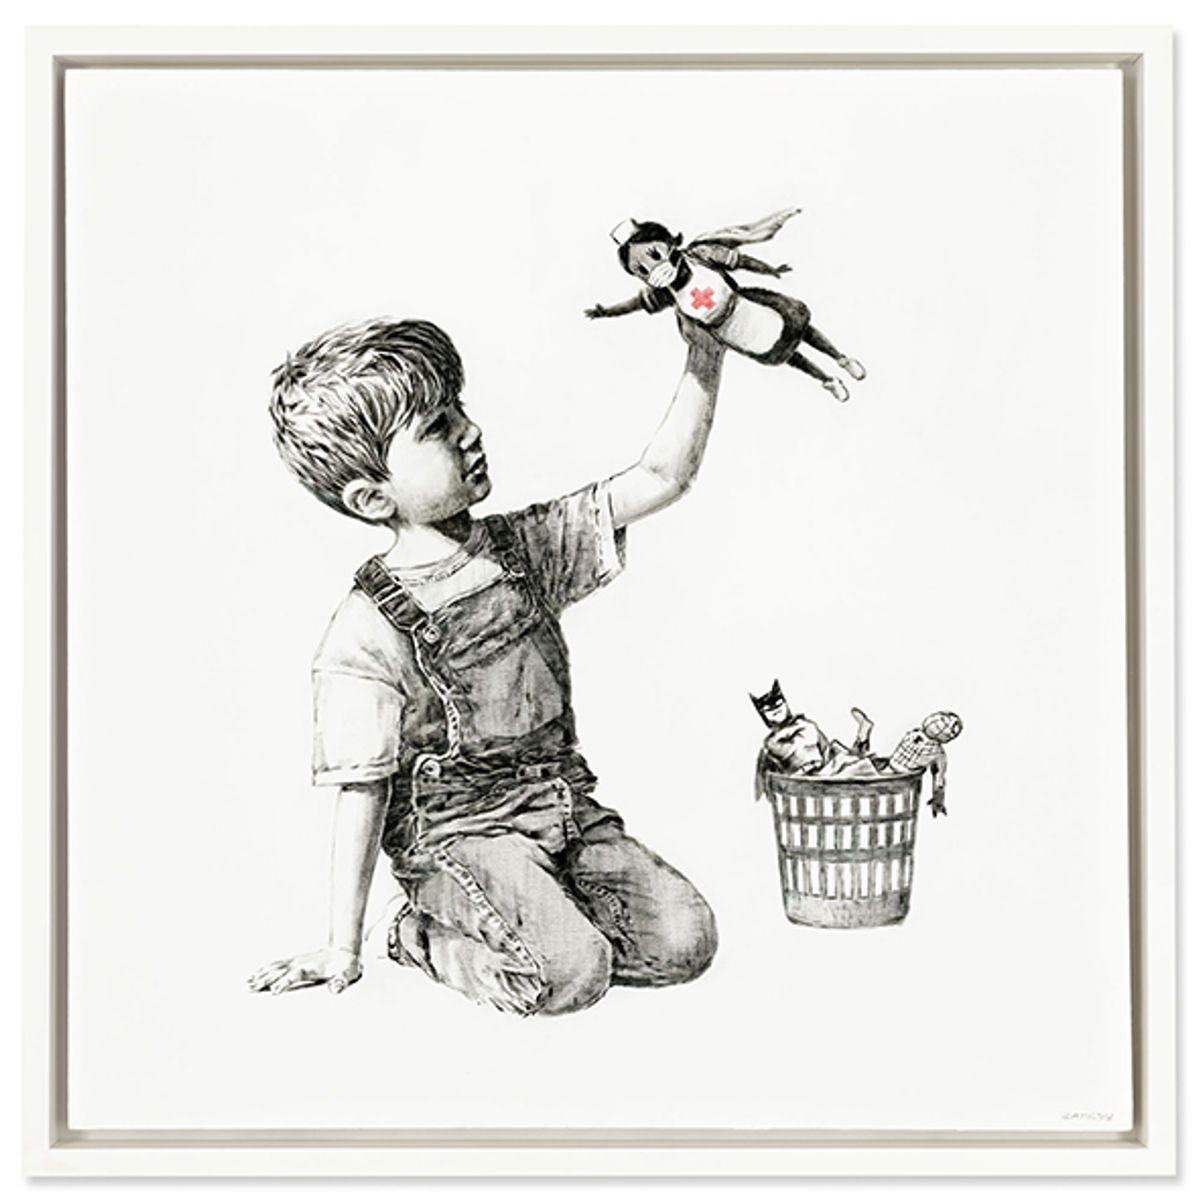 Banksy, Game Changer, 2020, huile sur toile, 91 x 91 cm. Vendue 19,4 millions d’euros à Christie’s Londres. Courtesy Christie’s